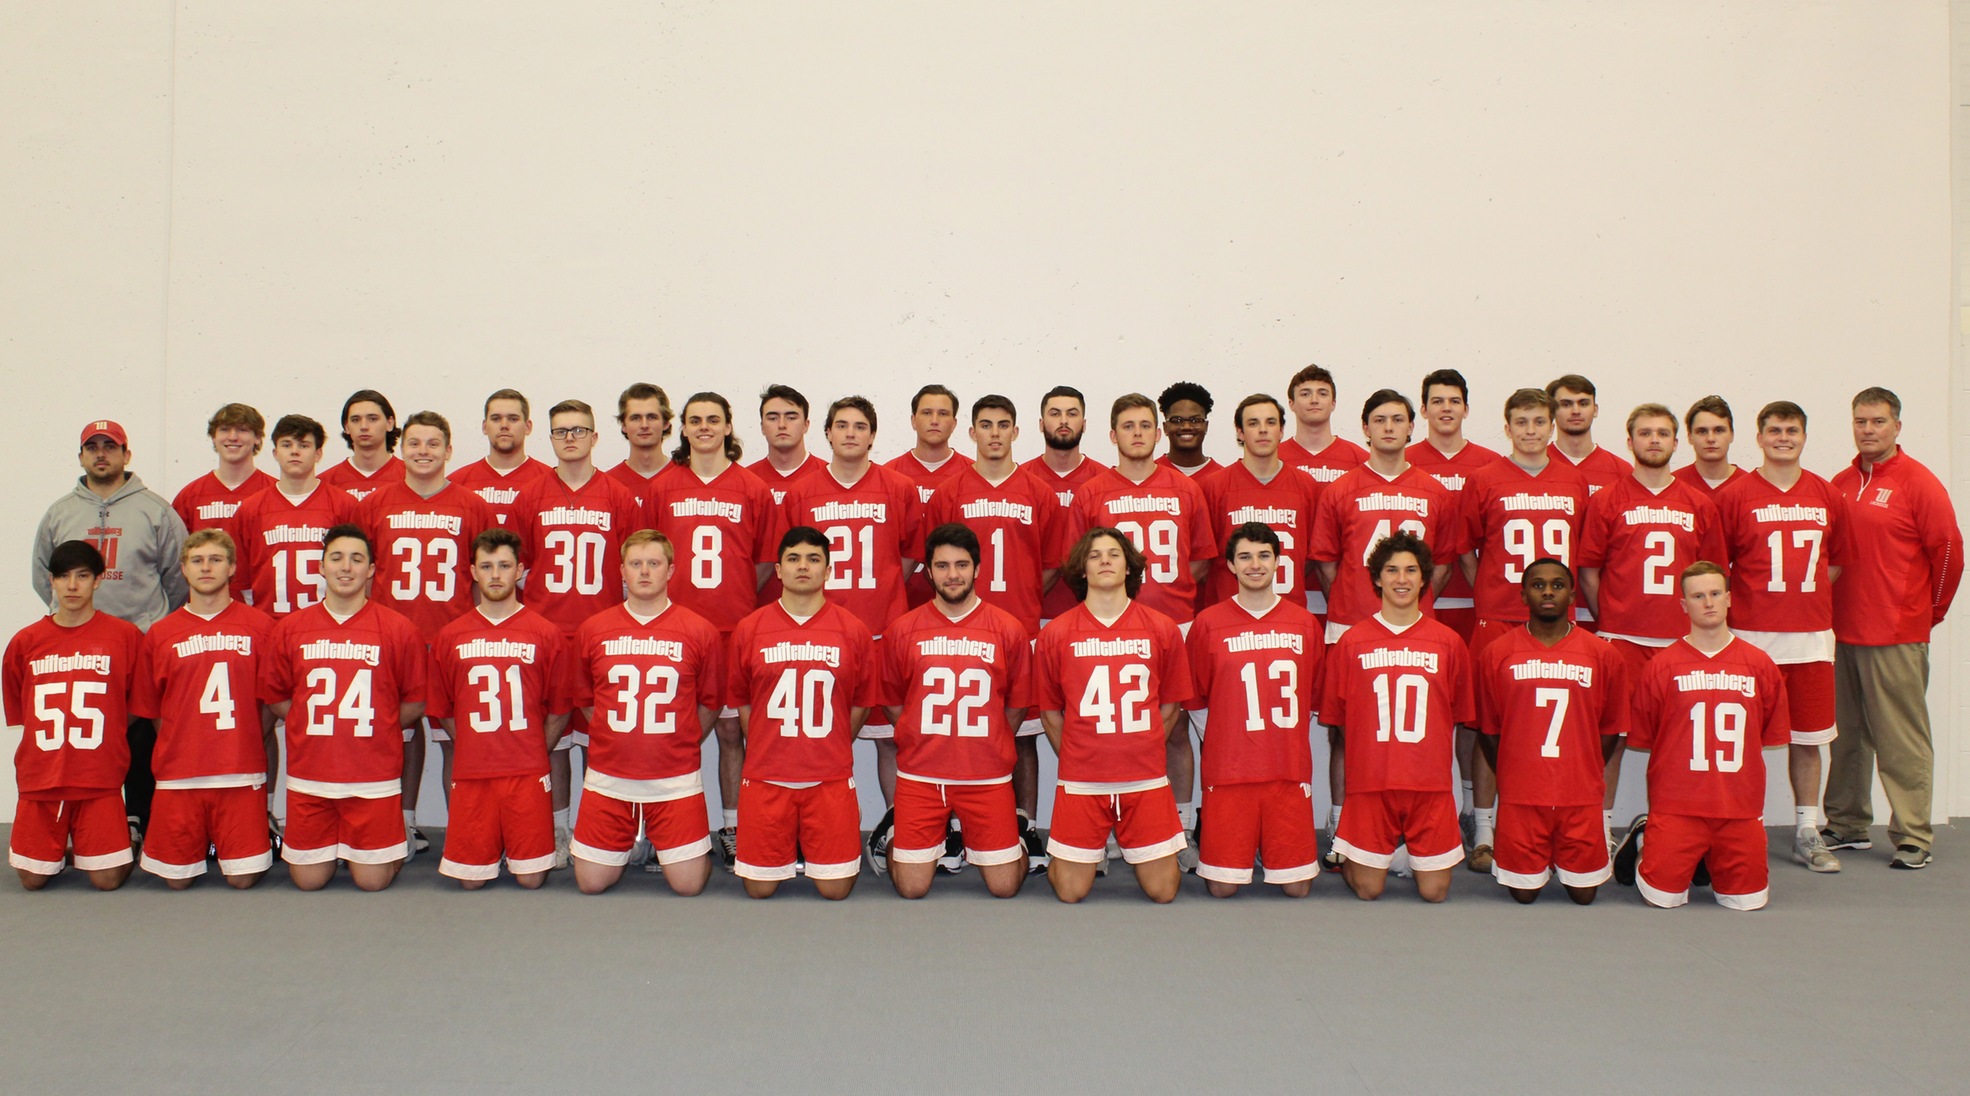 2019 Wittenberg Men's Lacrosse